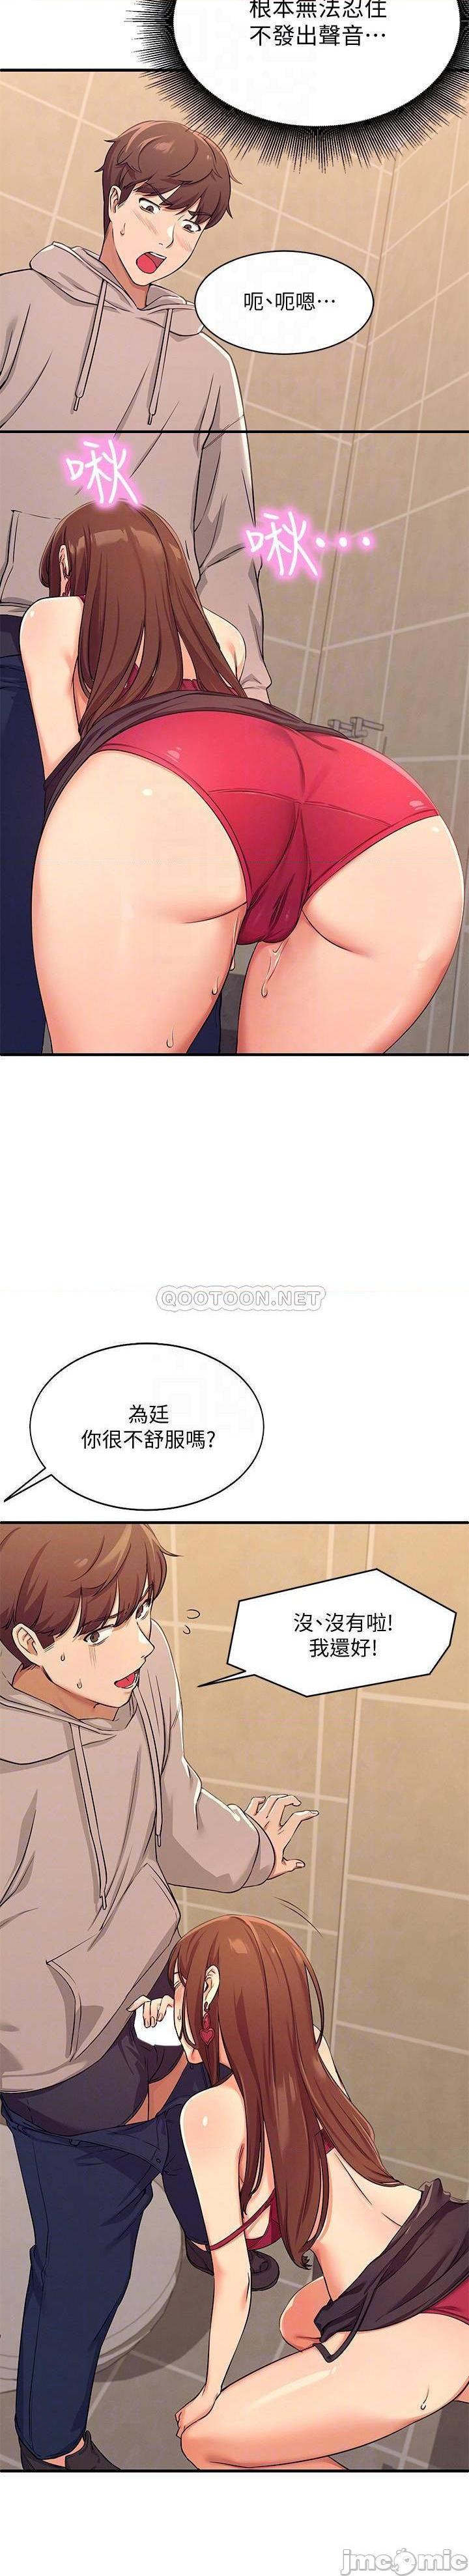 《谁说理组没正妹?》漫画 第3话 「教训」清纯校花